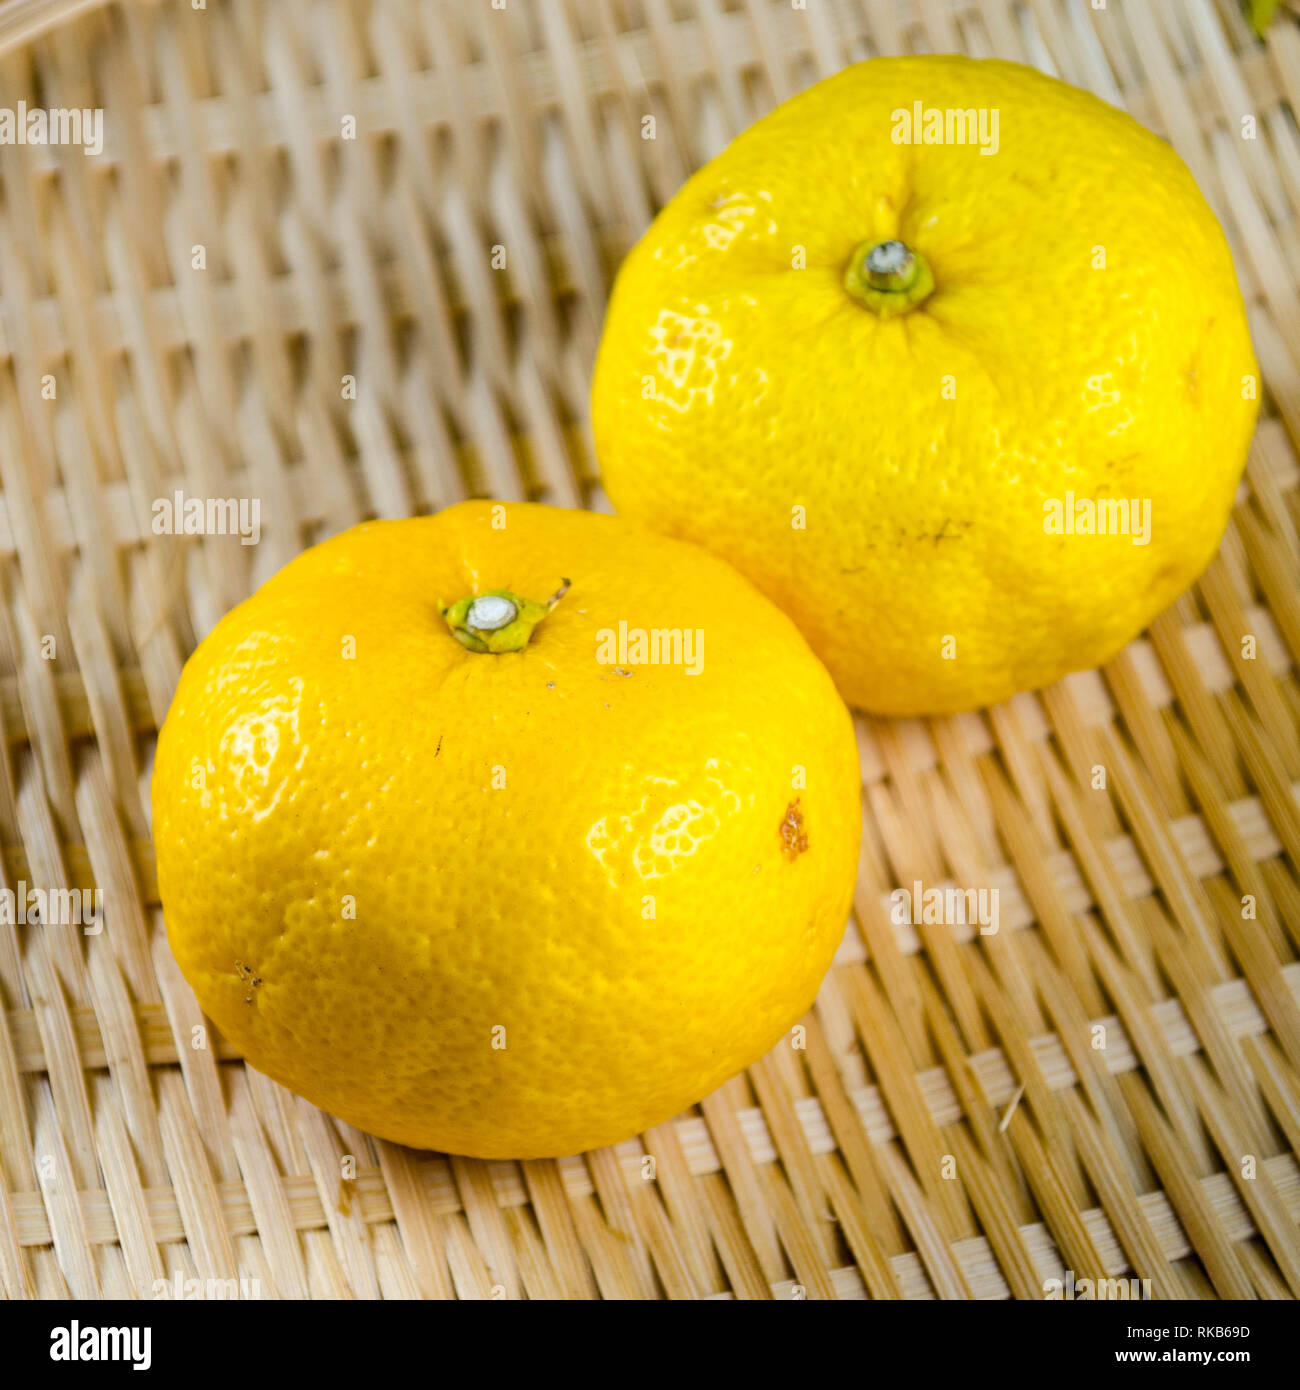 Deux fruits yuzu (un agrume japonais parfumé aigre et divers) sur un panier tissé Banque D'Images